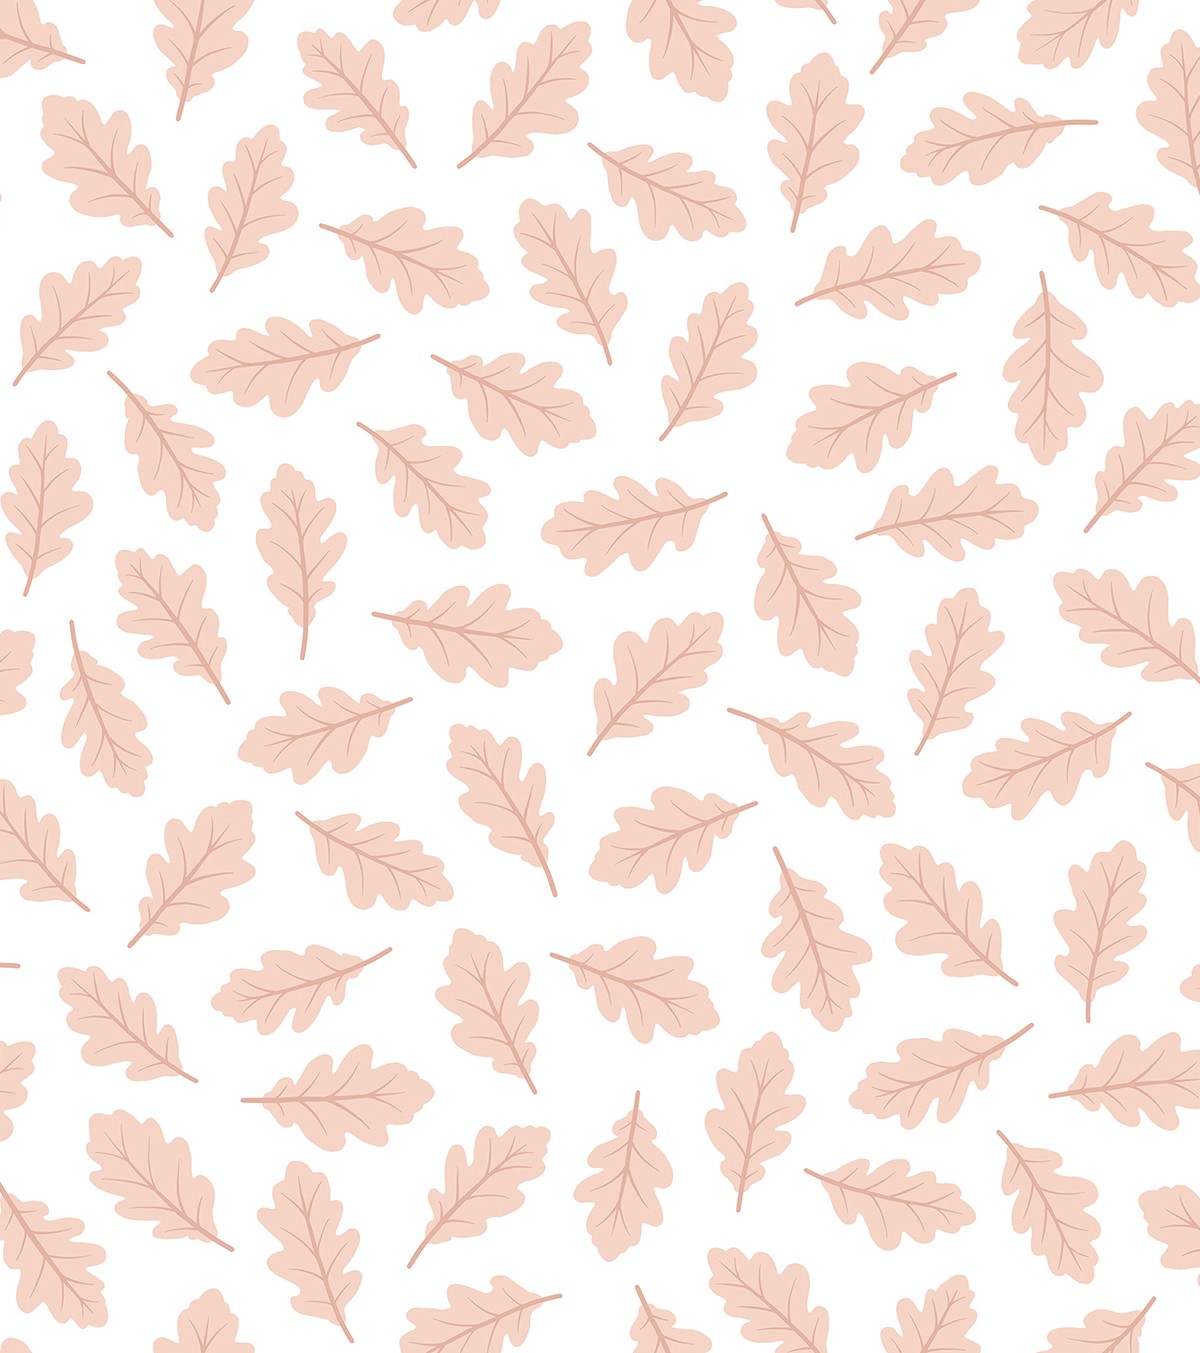 Jöro - Children's Wallpaper - Oak Leaf Pattern